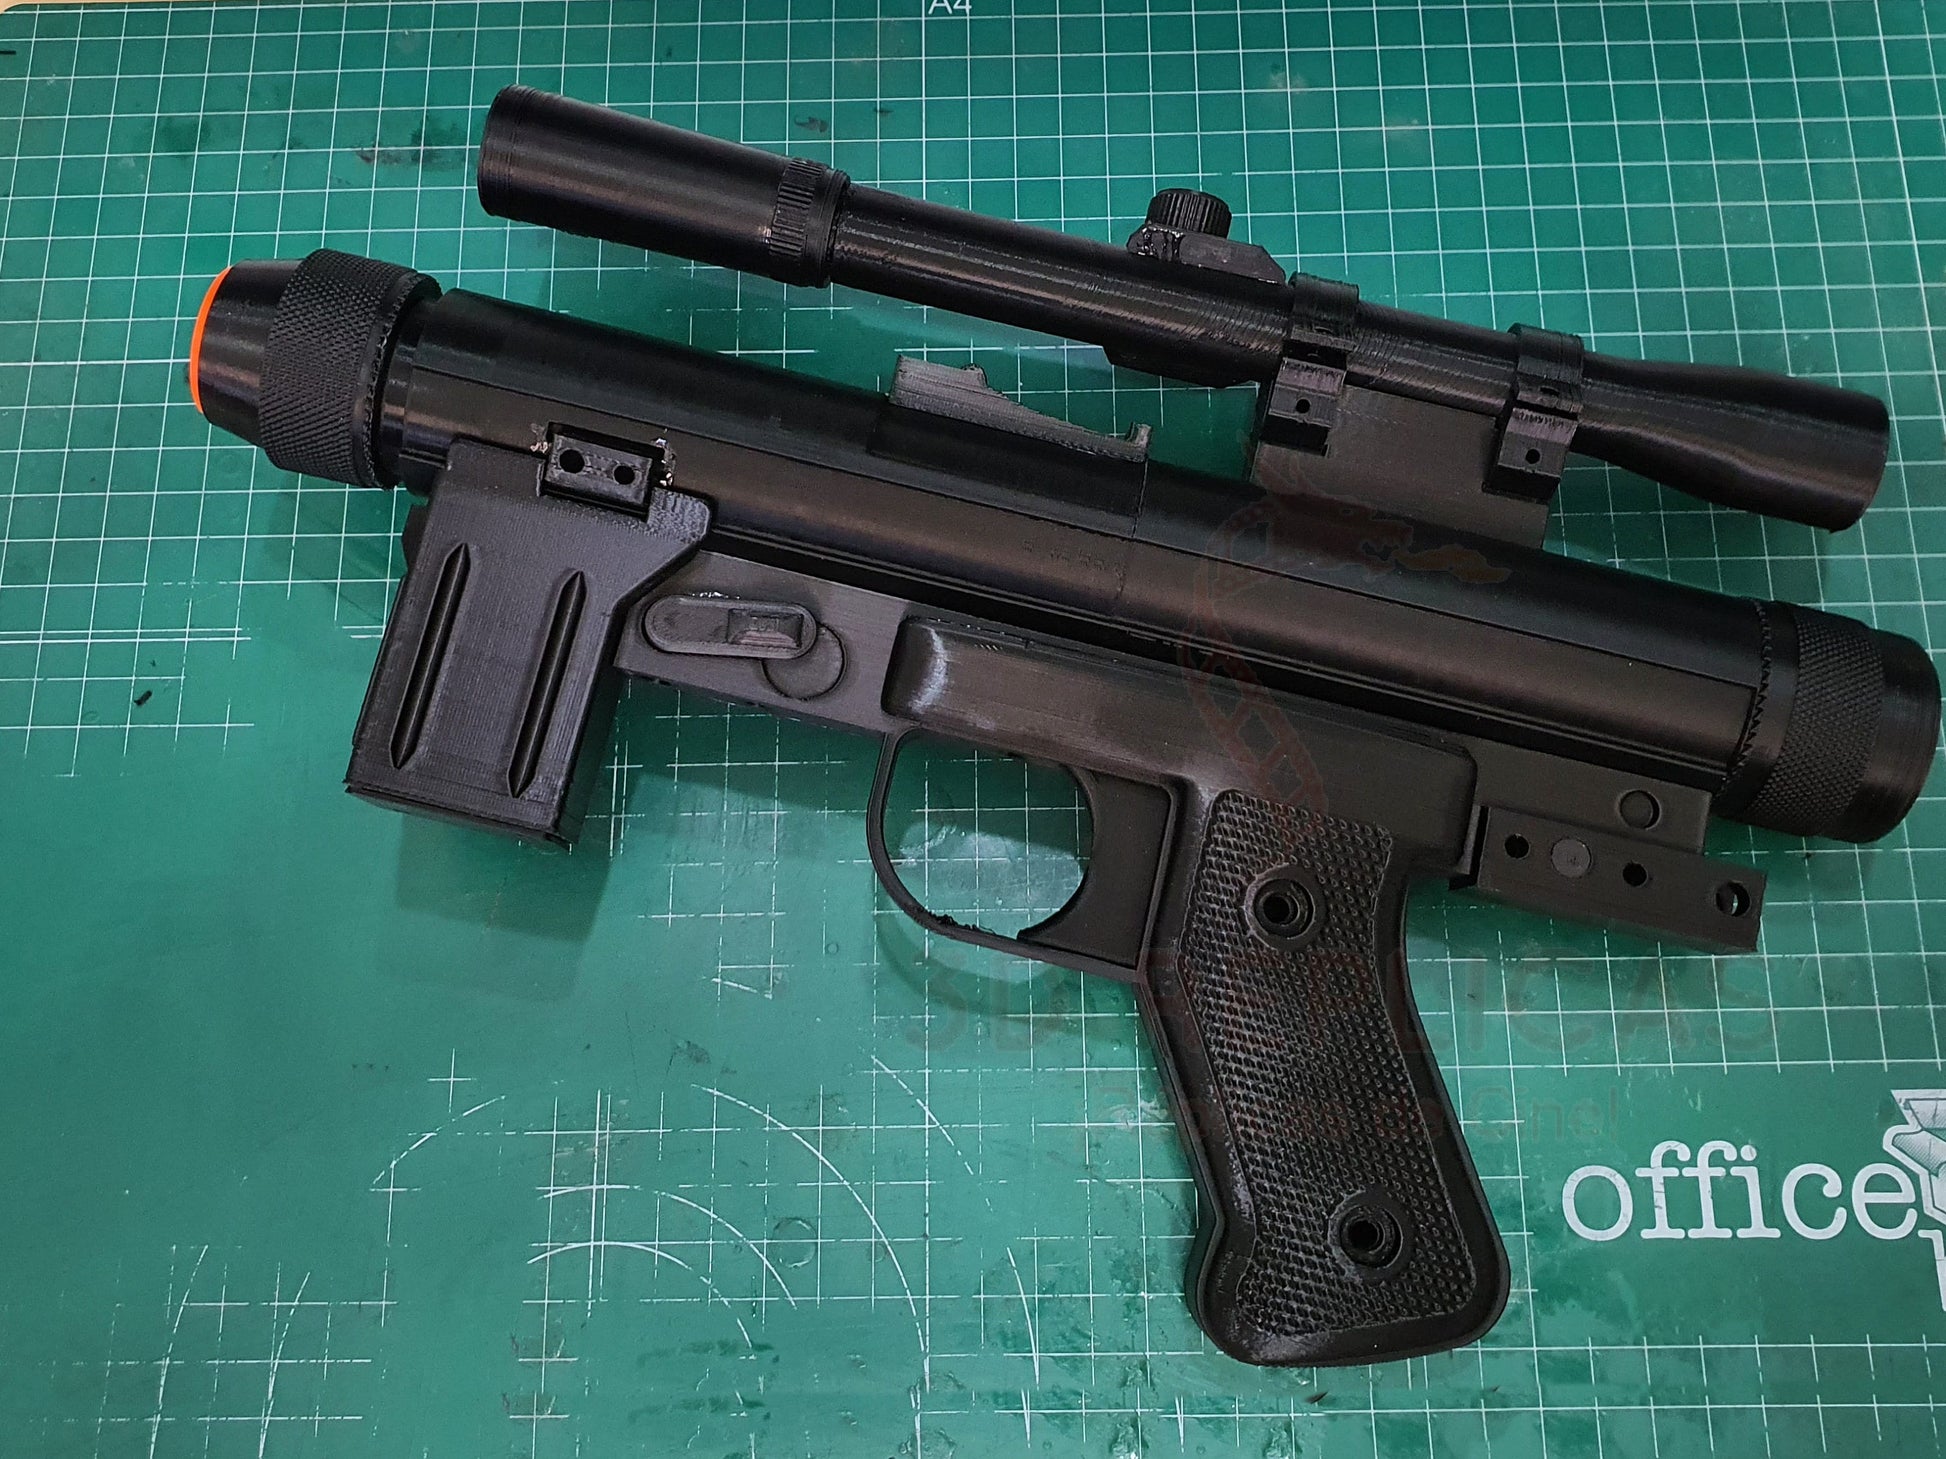 Star Wars SE-14r Death Trooper Blaster UNIBODY Version Cosplay Gun Pistol